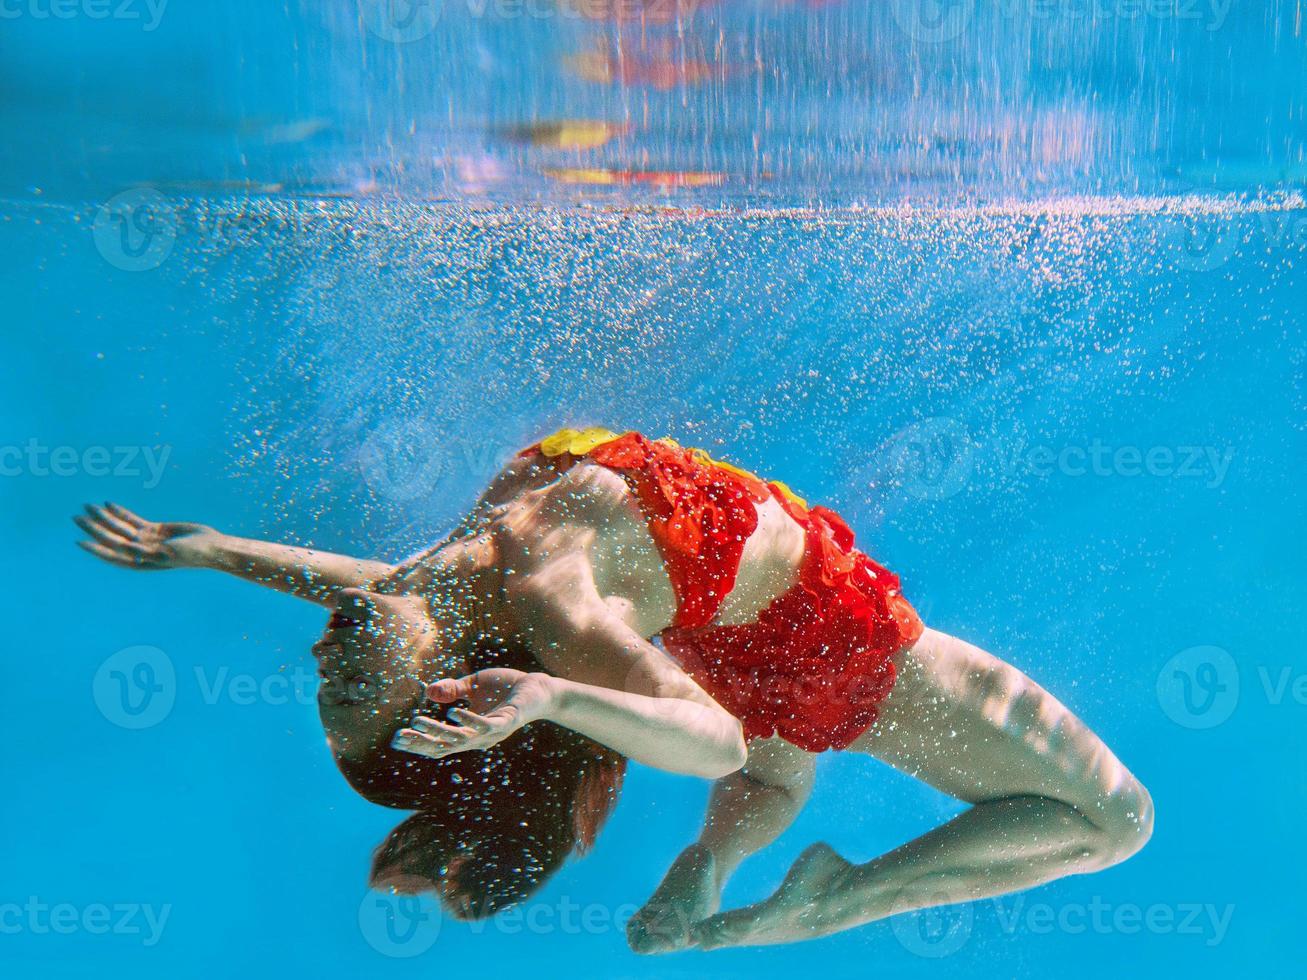 ongelooflijk, surrealistisch, ongelooflijk, geweldig onderwaterportret van slanke, fitte vrouw in fel oranje zwempak foto